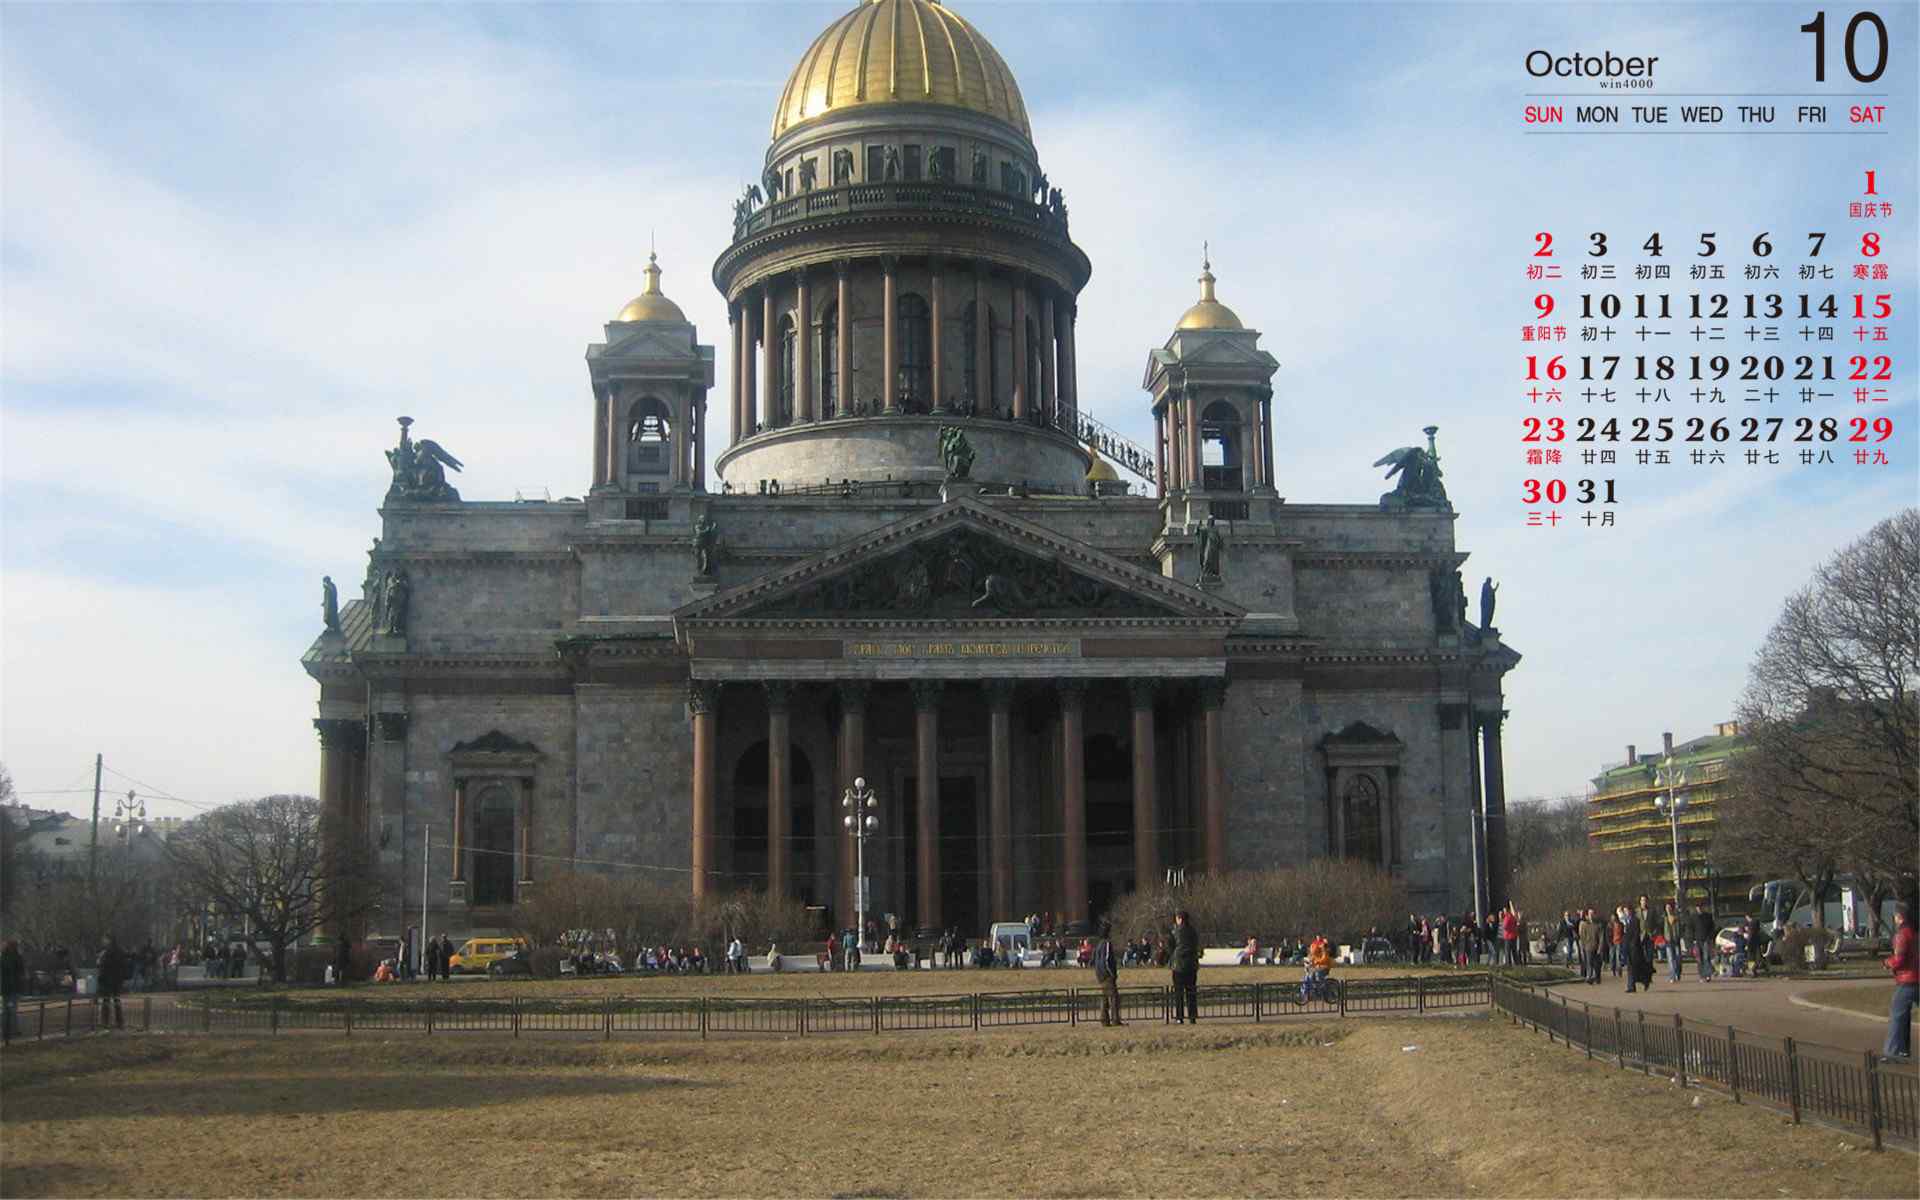 2016年10月日历莫斯科城市风景精选桌面壁纸